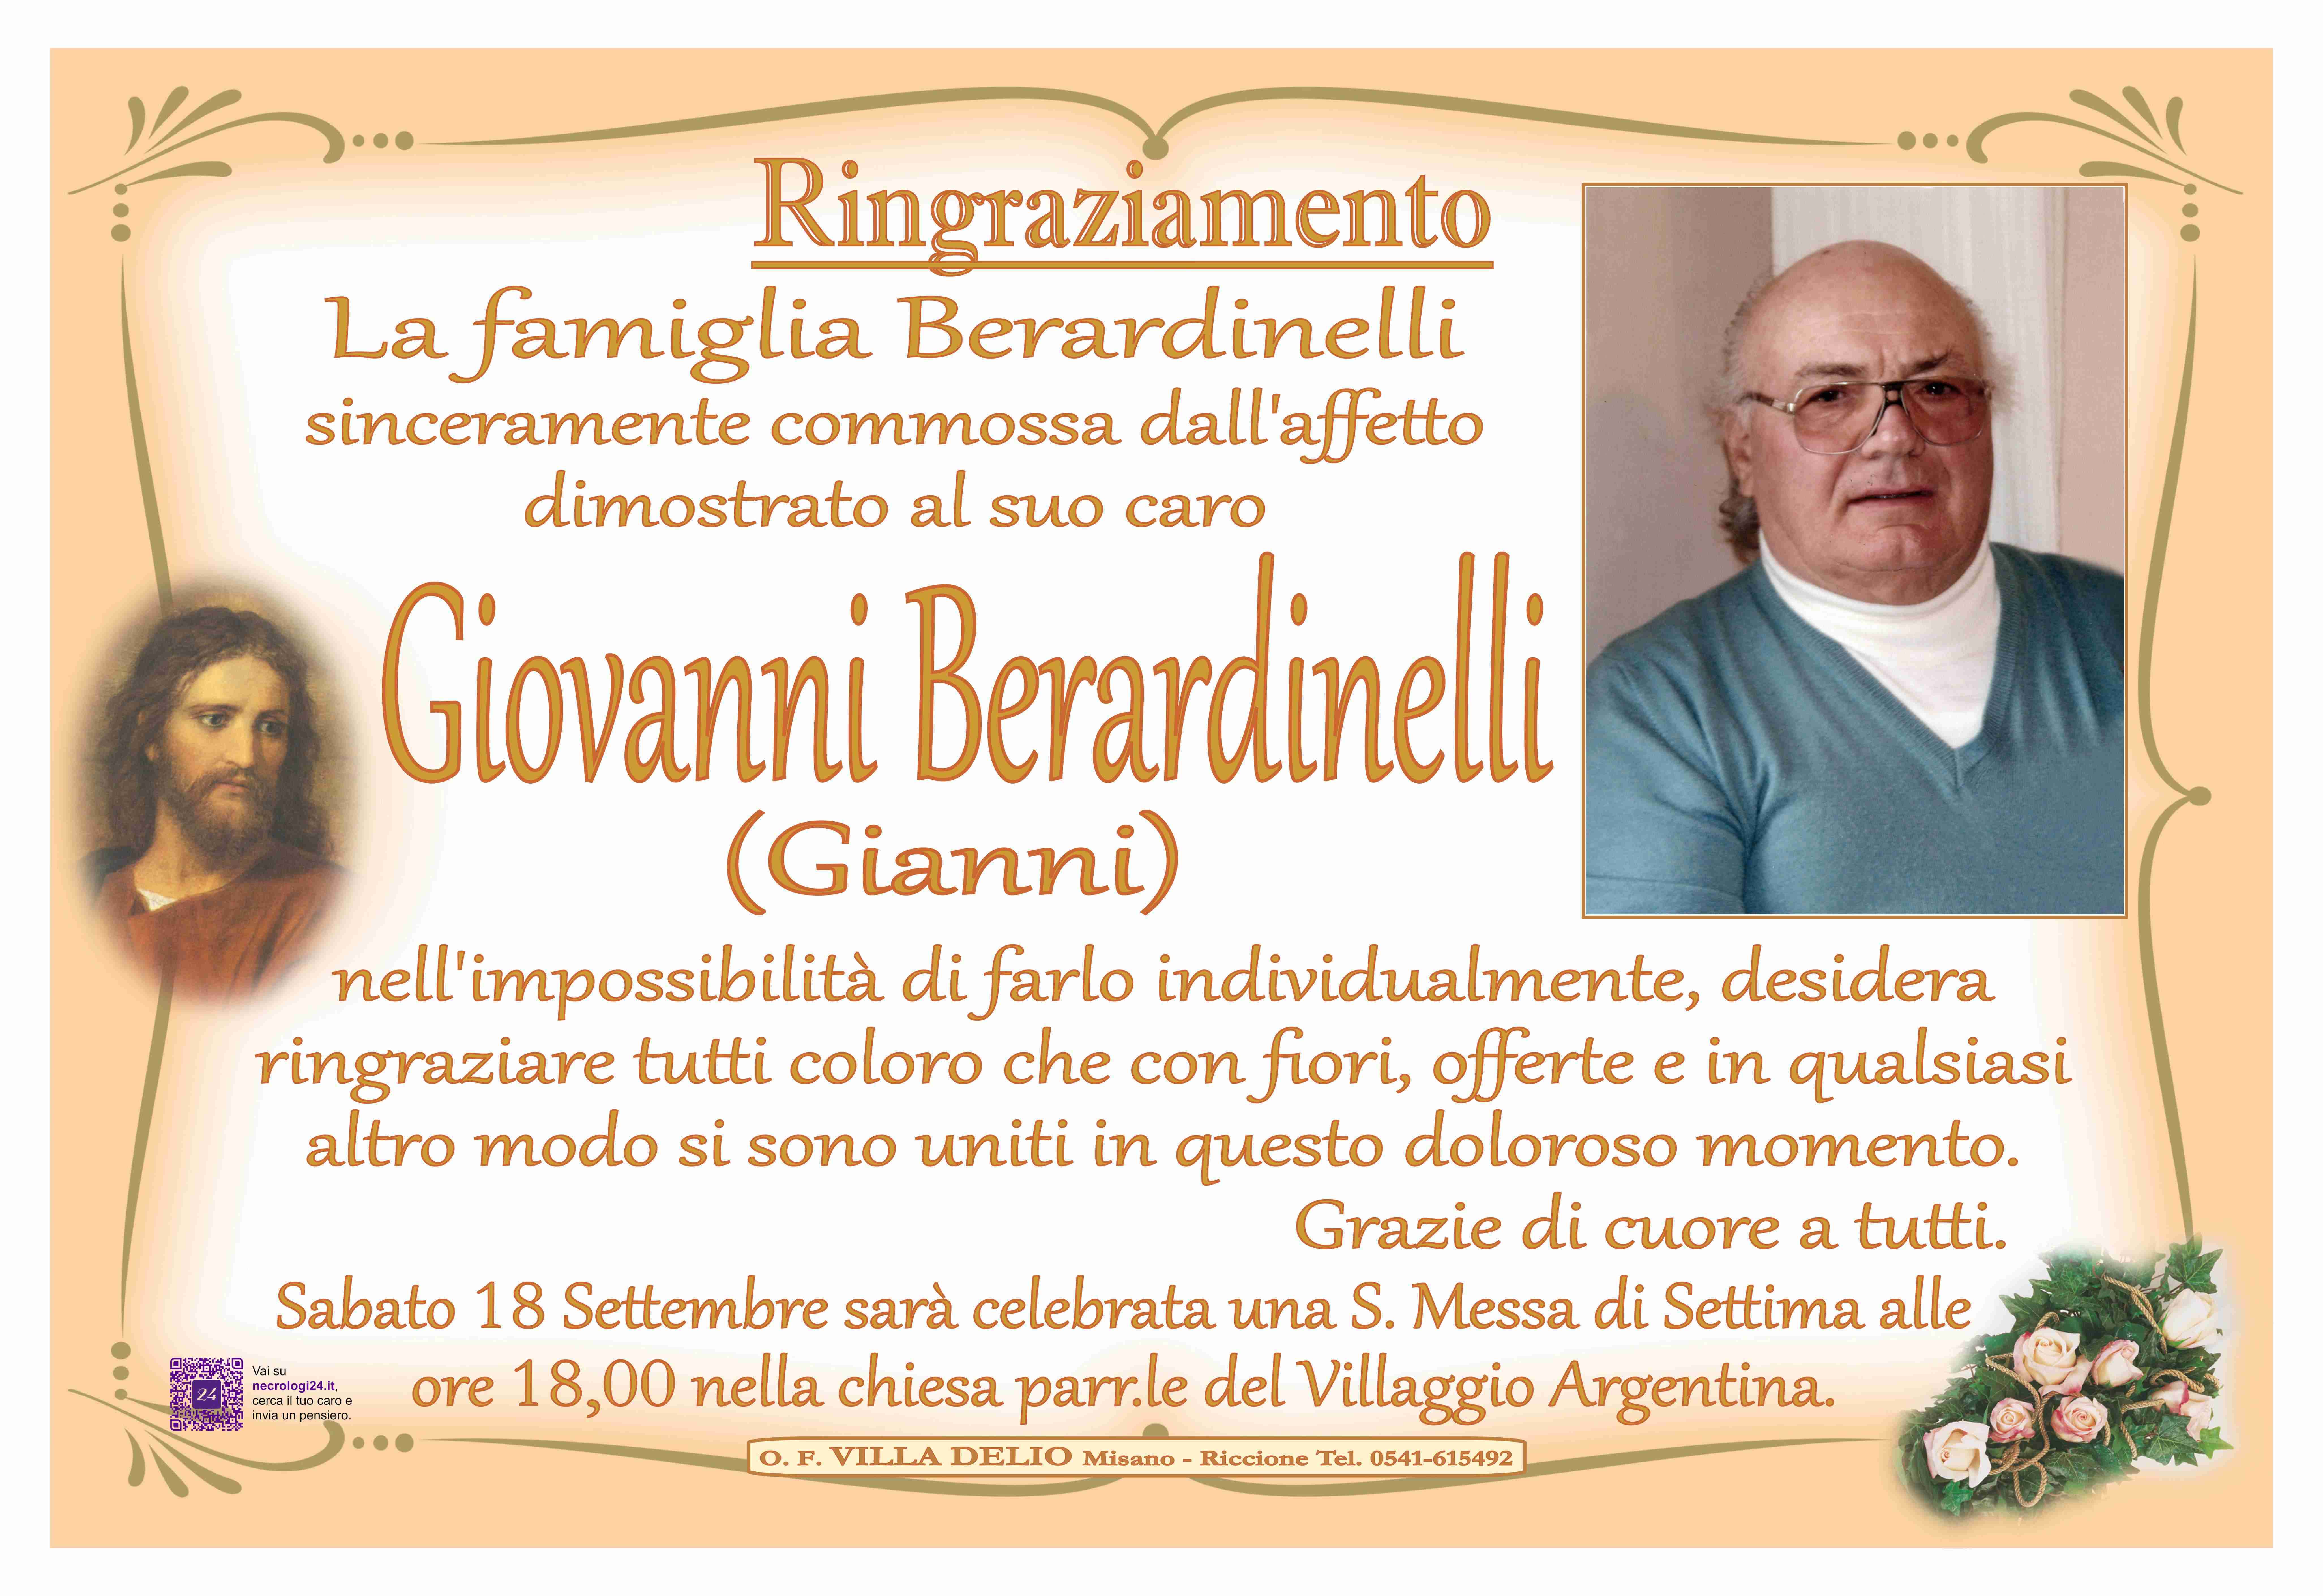 Giovanni Berardinelli